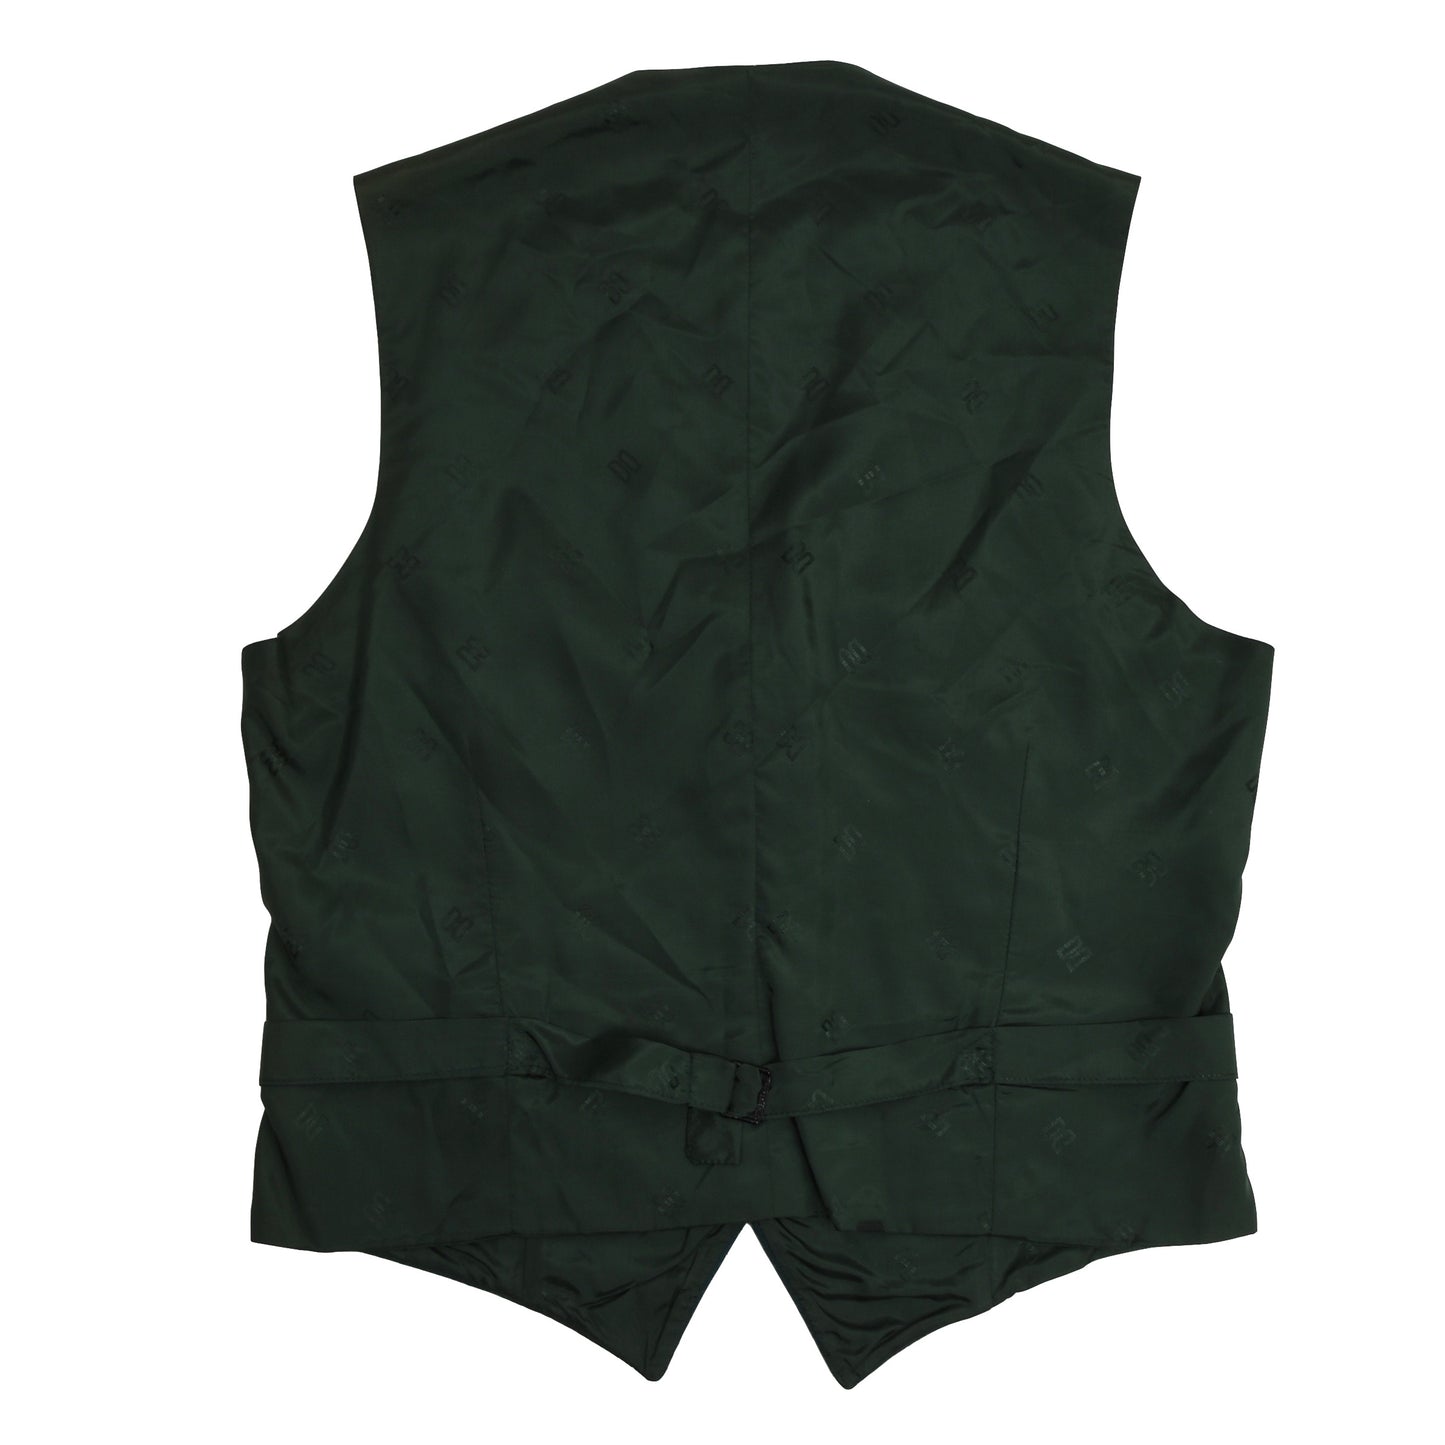 DAKS London Wool Waistcoat Size 50 - Green